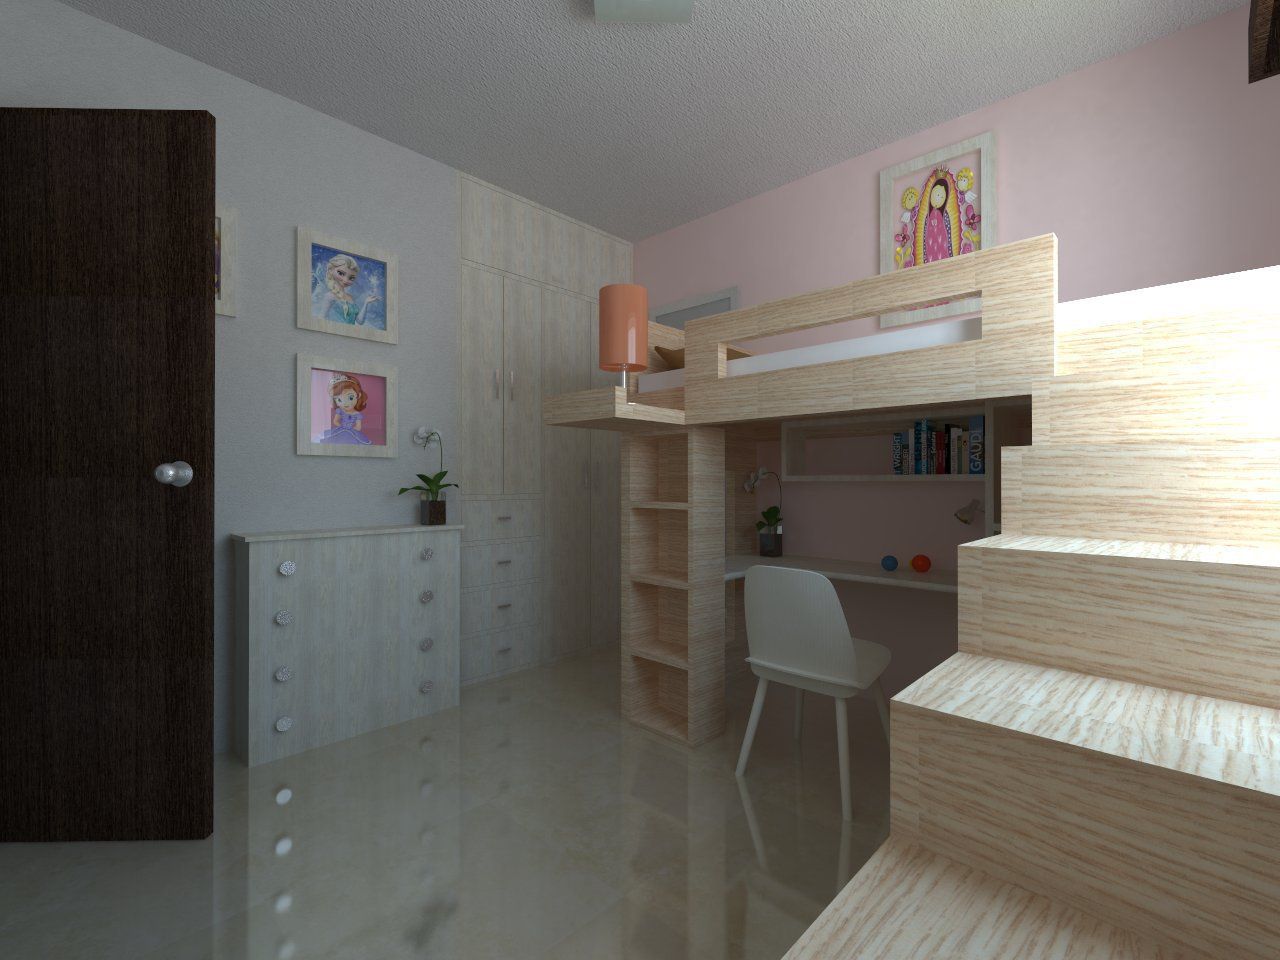 Recamara Infantil IDEA Studio Arquitectura Dormitorios infantiles modernos: